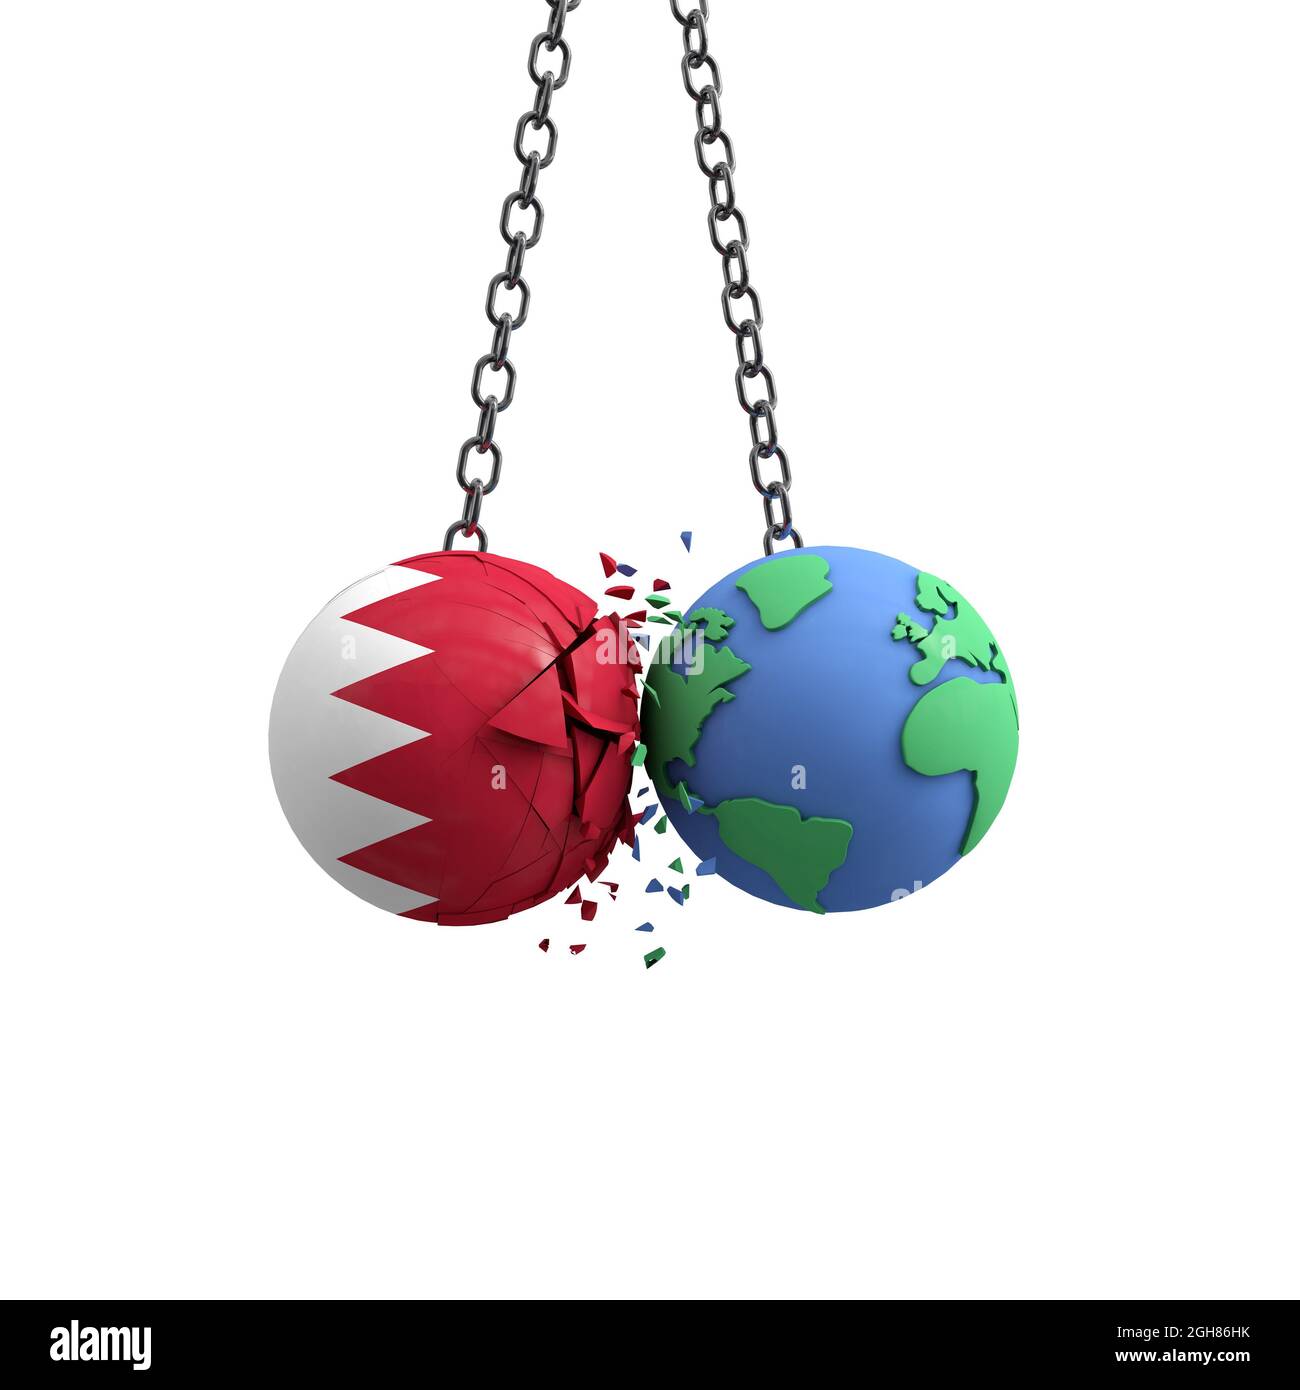 Le ballon de drapeau de Bahreïn frappe la planète terre. Concept d'impact sur l'environnement. Rendu 3D Banque D'Images